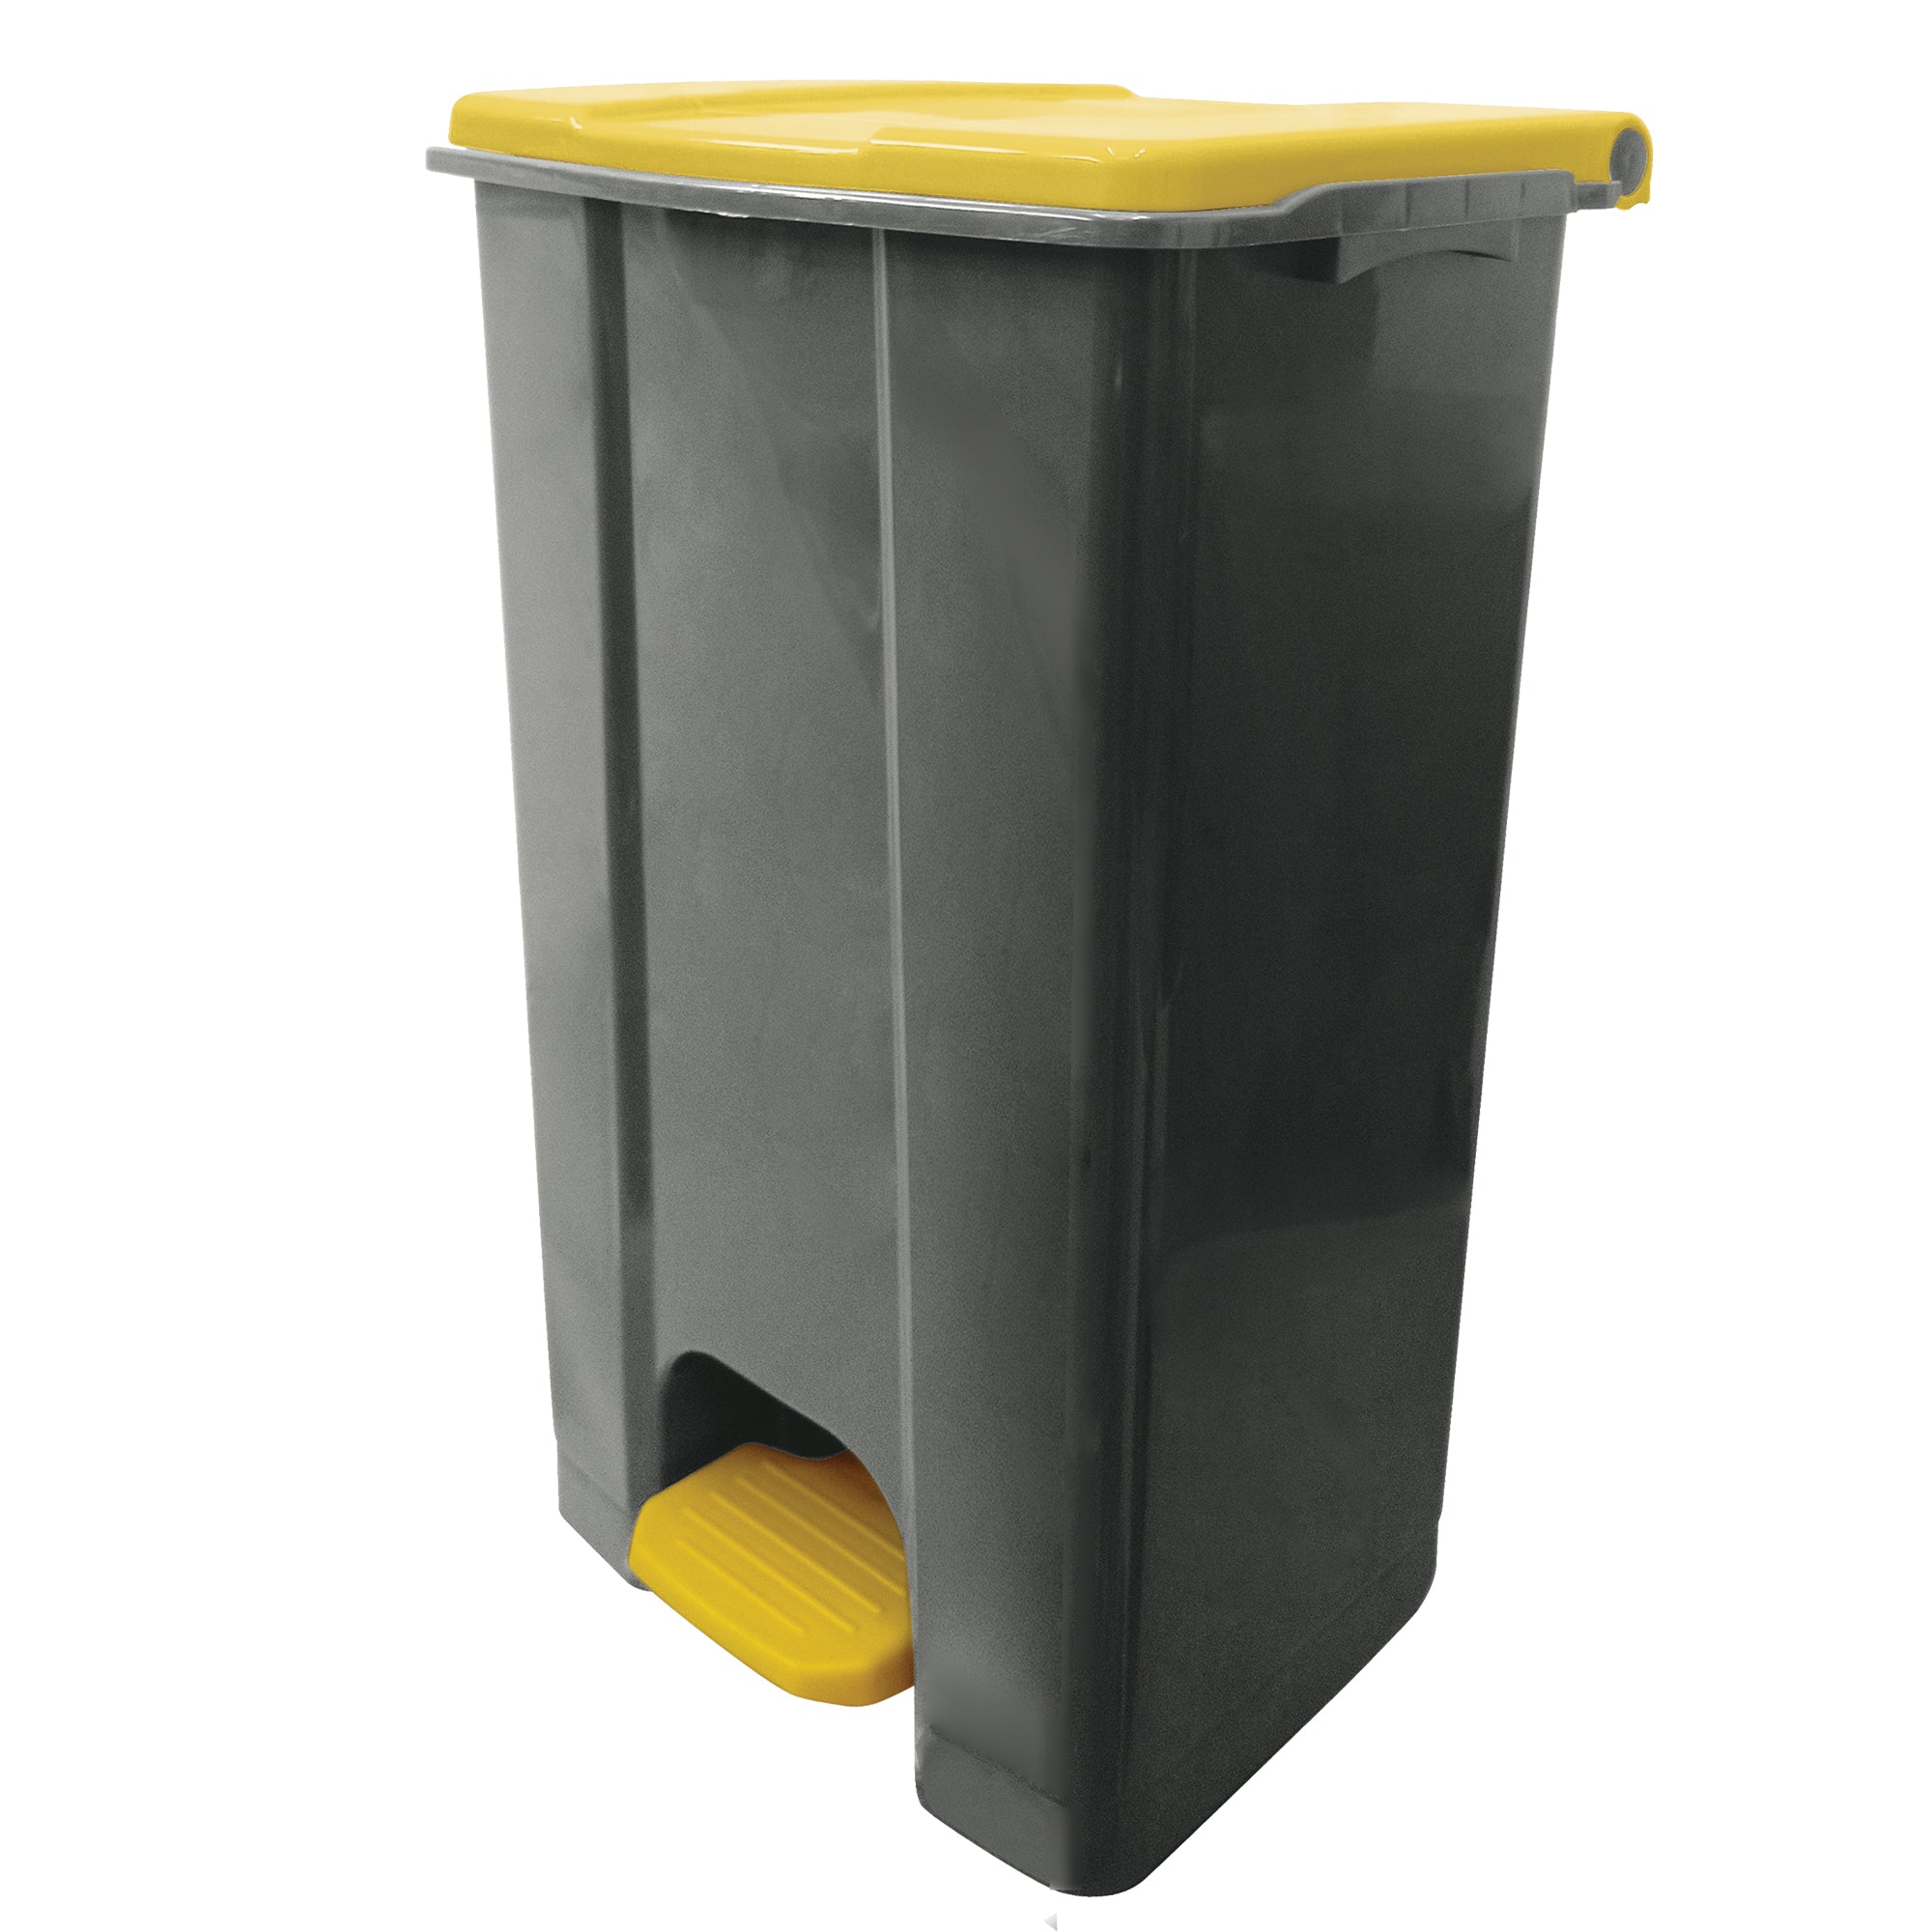 medialinternational-contenitore-mobile-pedale-plastica-riciclata-ecoconti-80lt-grigio-giallo